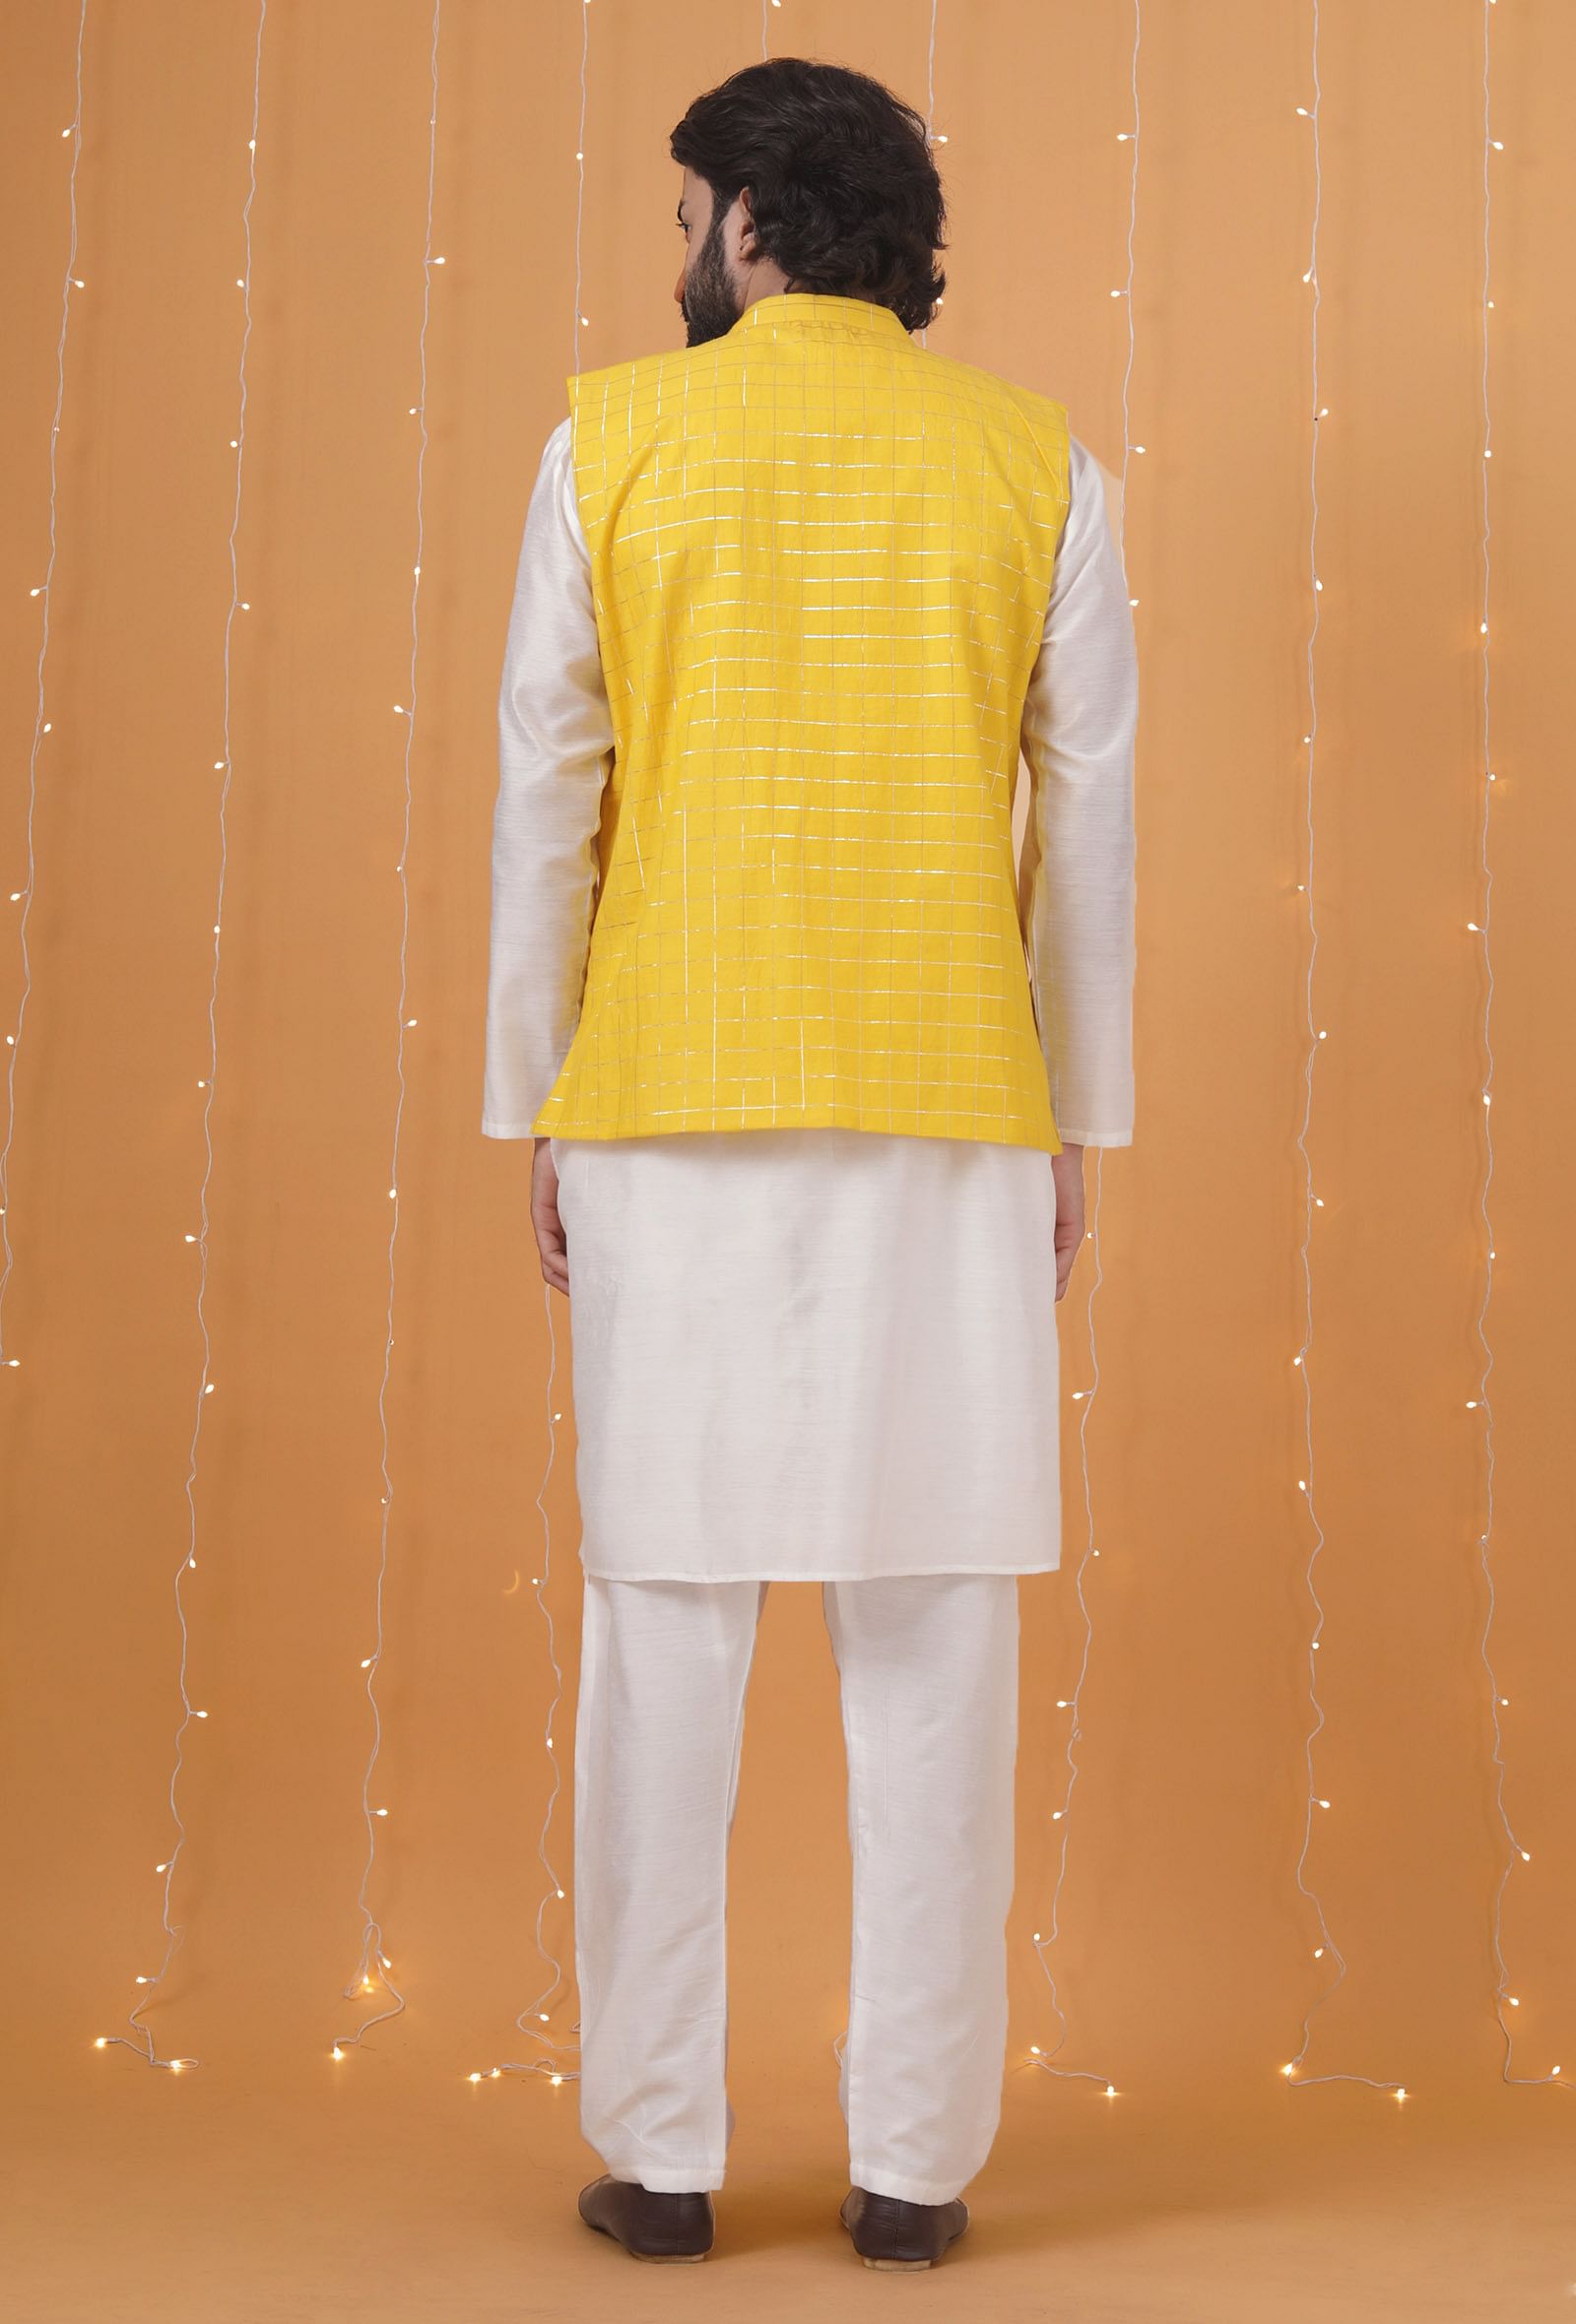 Set Of 3: Yellow Checkered Chanderi Nehru Jacket, Ivory White Kurta & Pajama